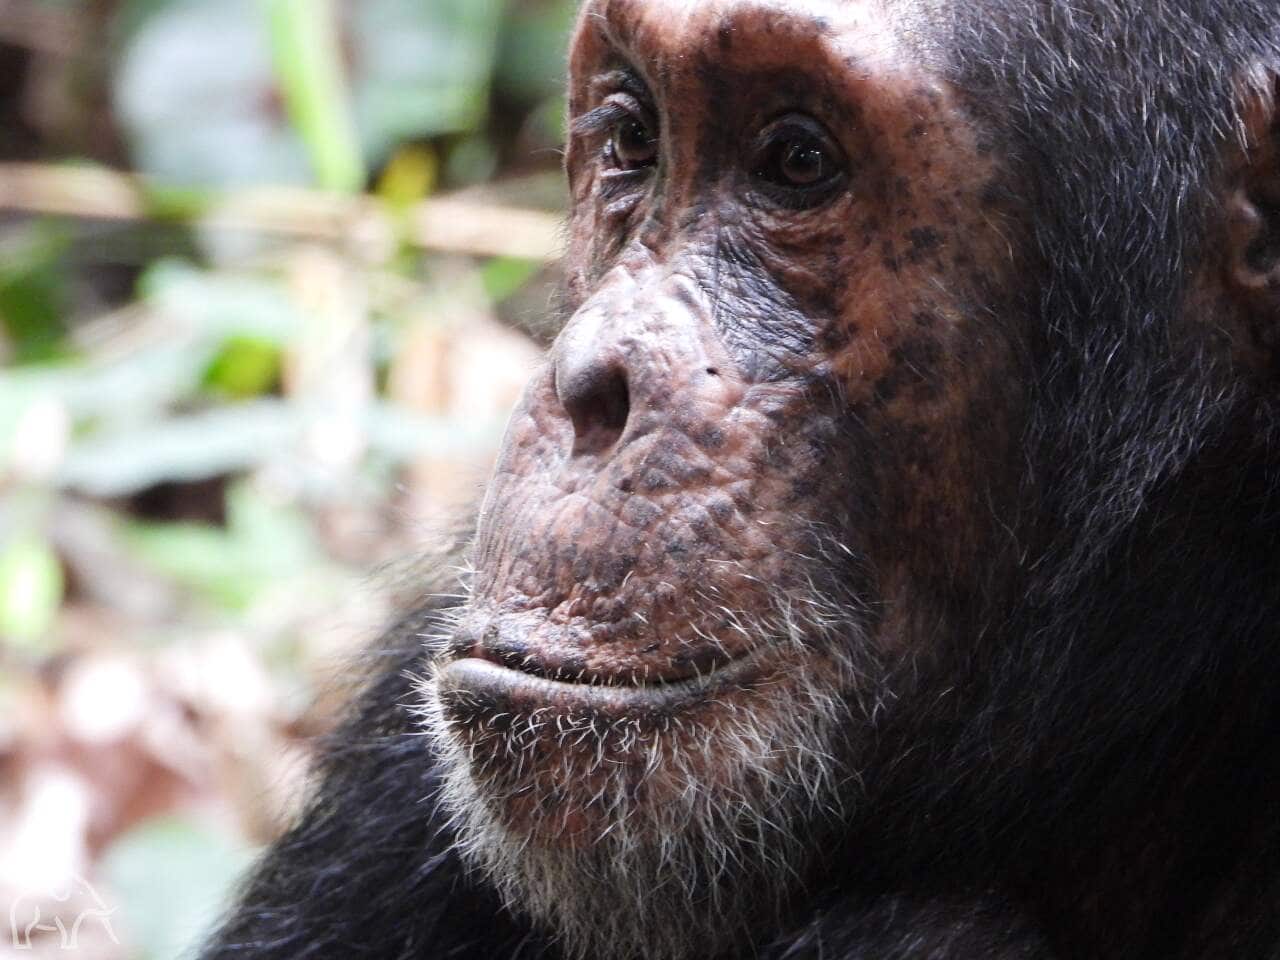 In Mahale Tanzania tijdens een chimpansee trekking. Close-up van het hoofd van een chimpansee met grijzige haren rond de mond en de lippen op elkaar een mooie platte neus en zij kijkt voor zich uit